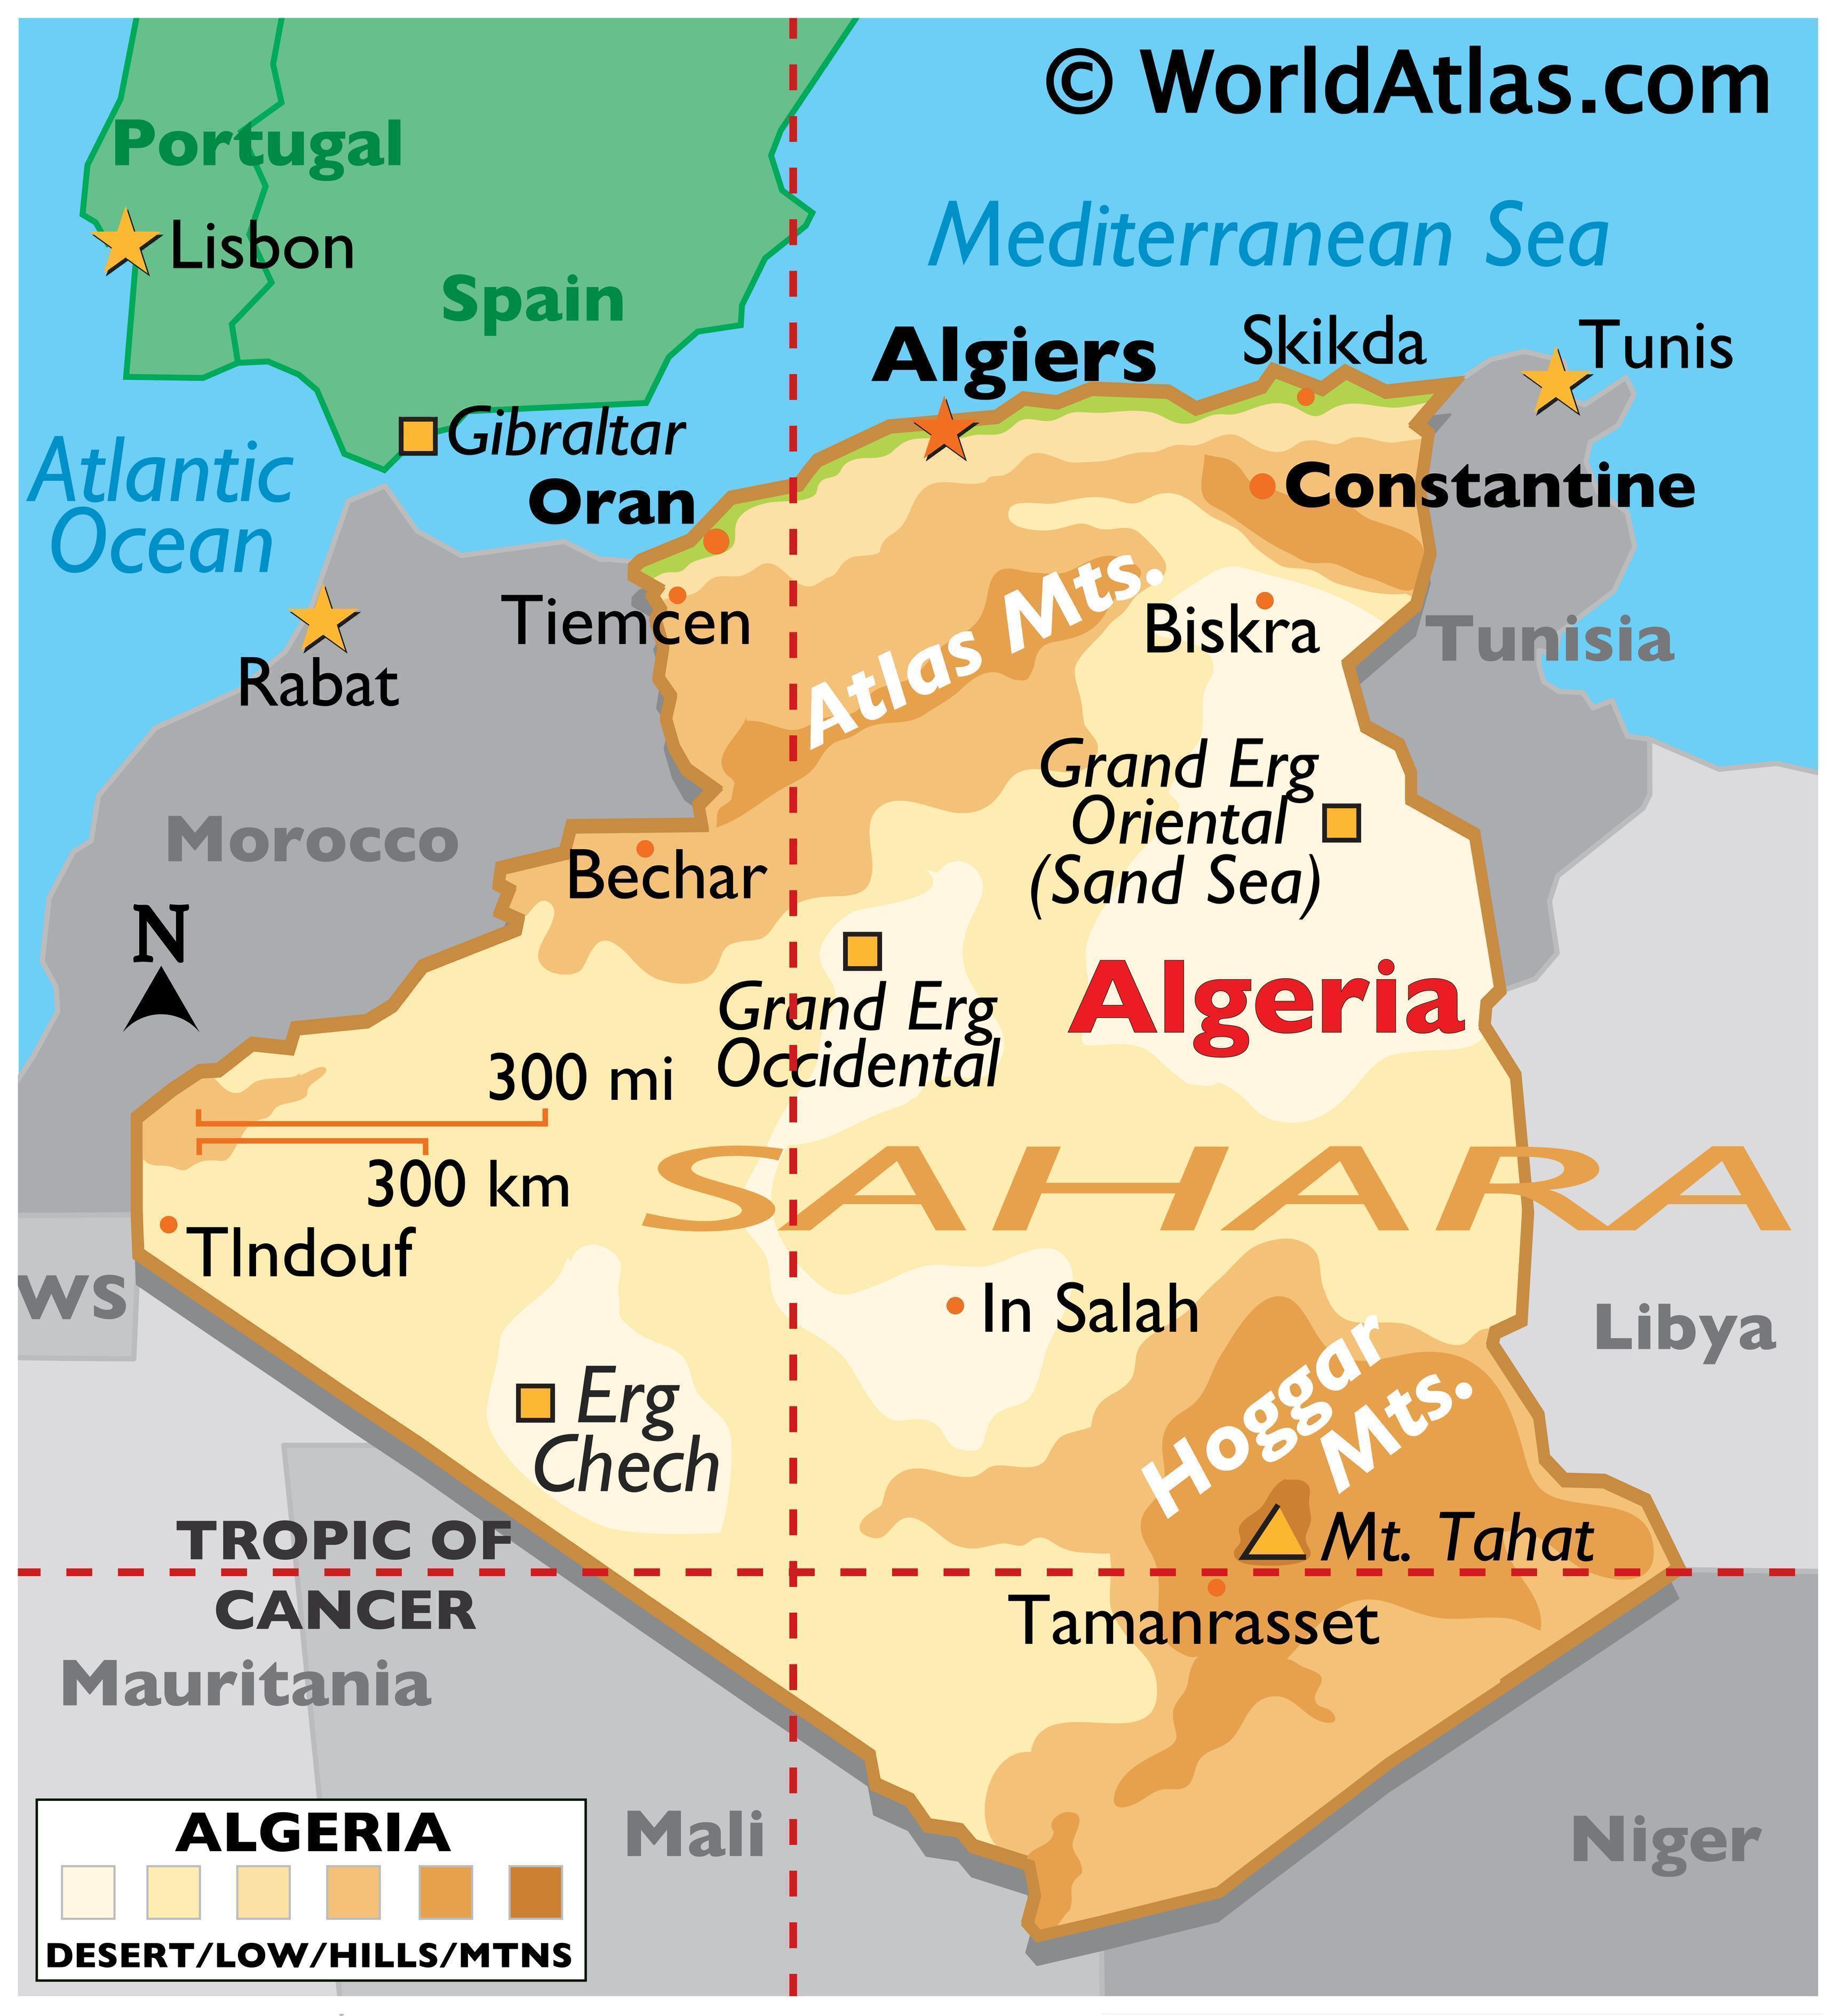 Aljazair juga merupakan negara yang mayoritas penduduknya beragama islam, jika diprosentase berapa persenkah penduduk muslim di aljazair?